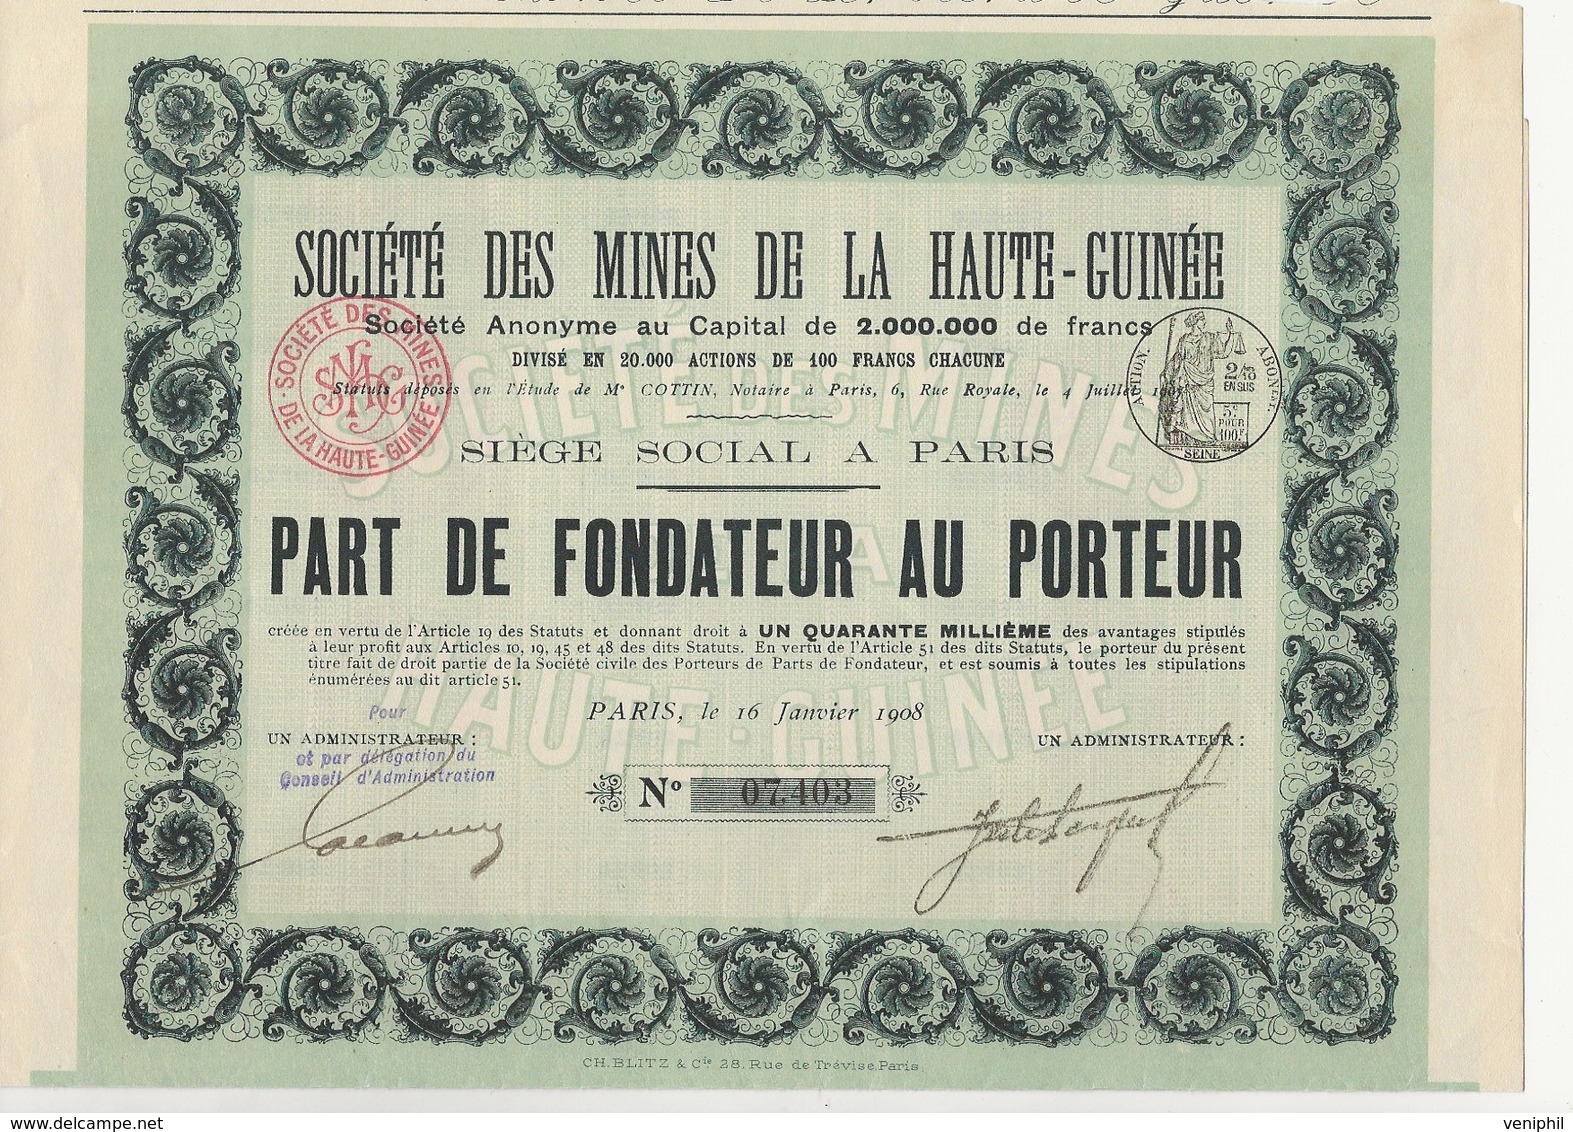 PART DE FONDATEUR DES MINES DE LA HAUTE -GUINEE * ANNEE 1908 - Mineral